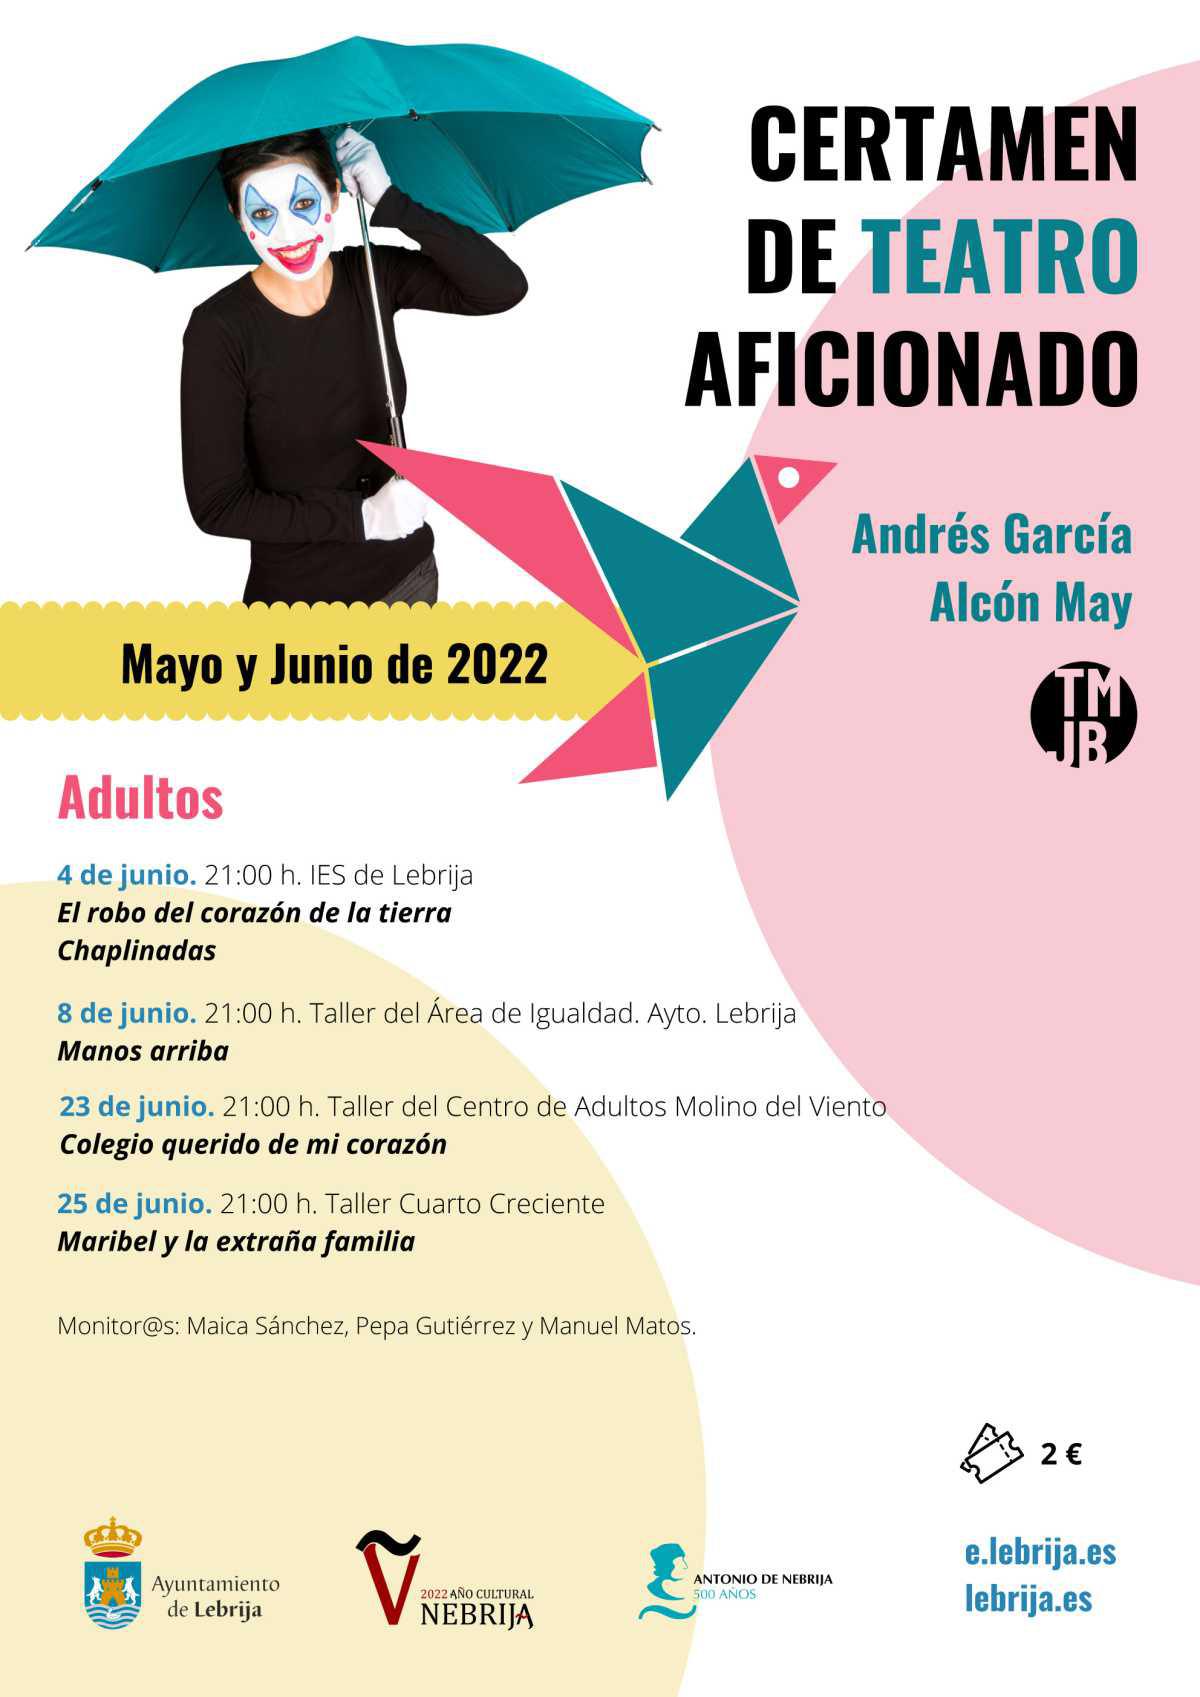 La nueva edición del Certamen de Teatro Aficionado Andrés García Alcón "May" comienza este jueves 5 de mayo